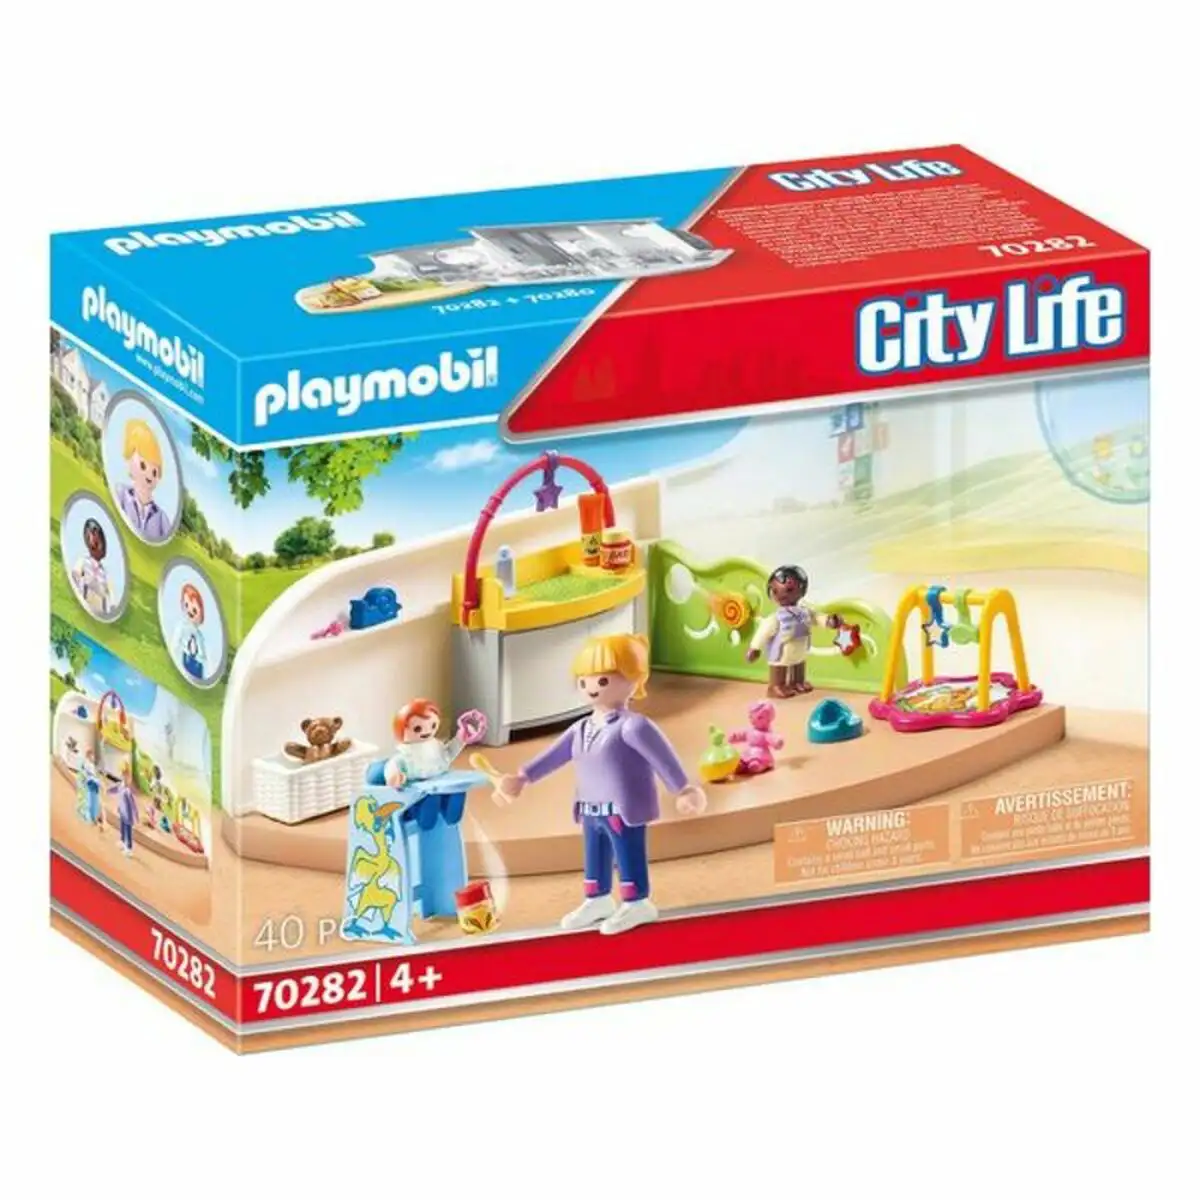 Playset city life baby room playmobil 70282 40 pcs _2886. DIAYTAR SENEGAL - Là où Vos Rêves Prendent Forme. Plongez dans notre catalogue diversifié et trouvez des produits qui enrichiront votre quotidien, du pratique à l'exceptionnel.